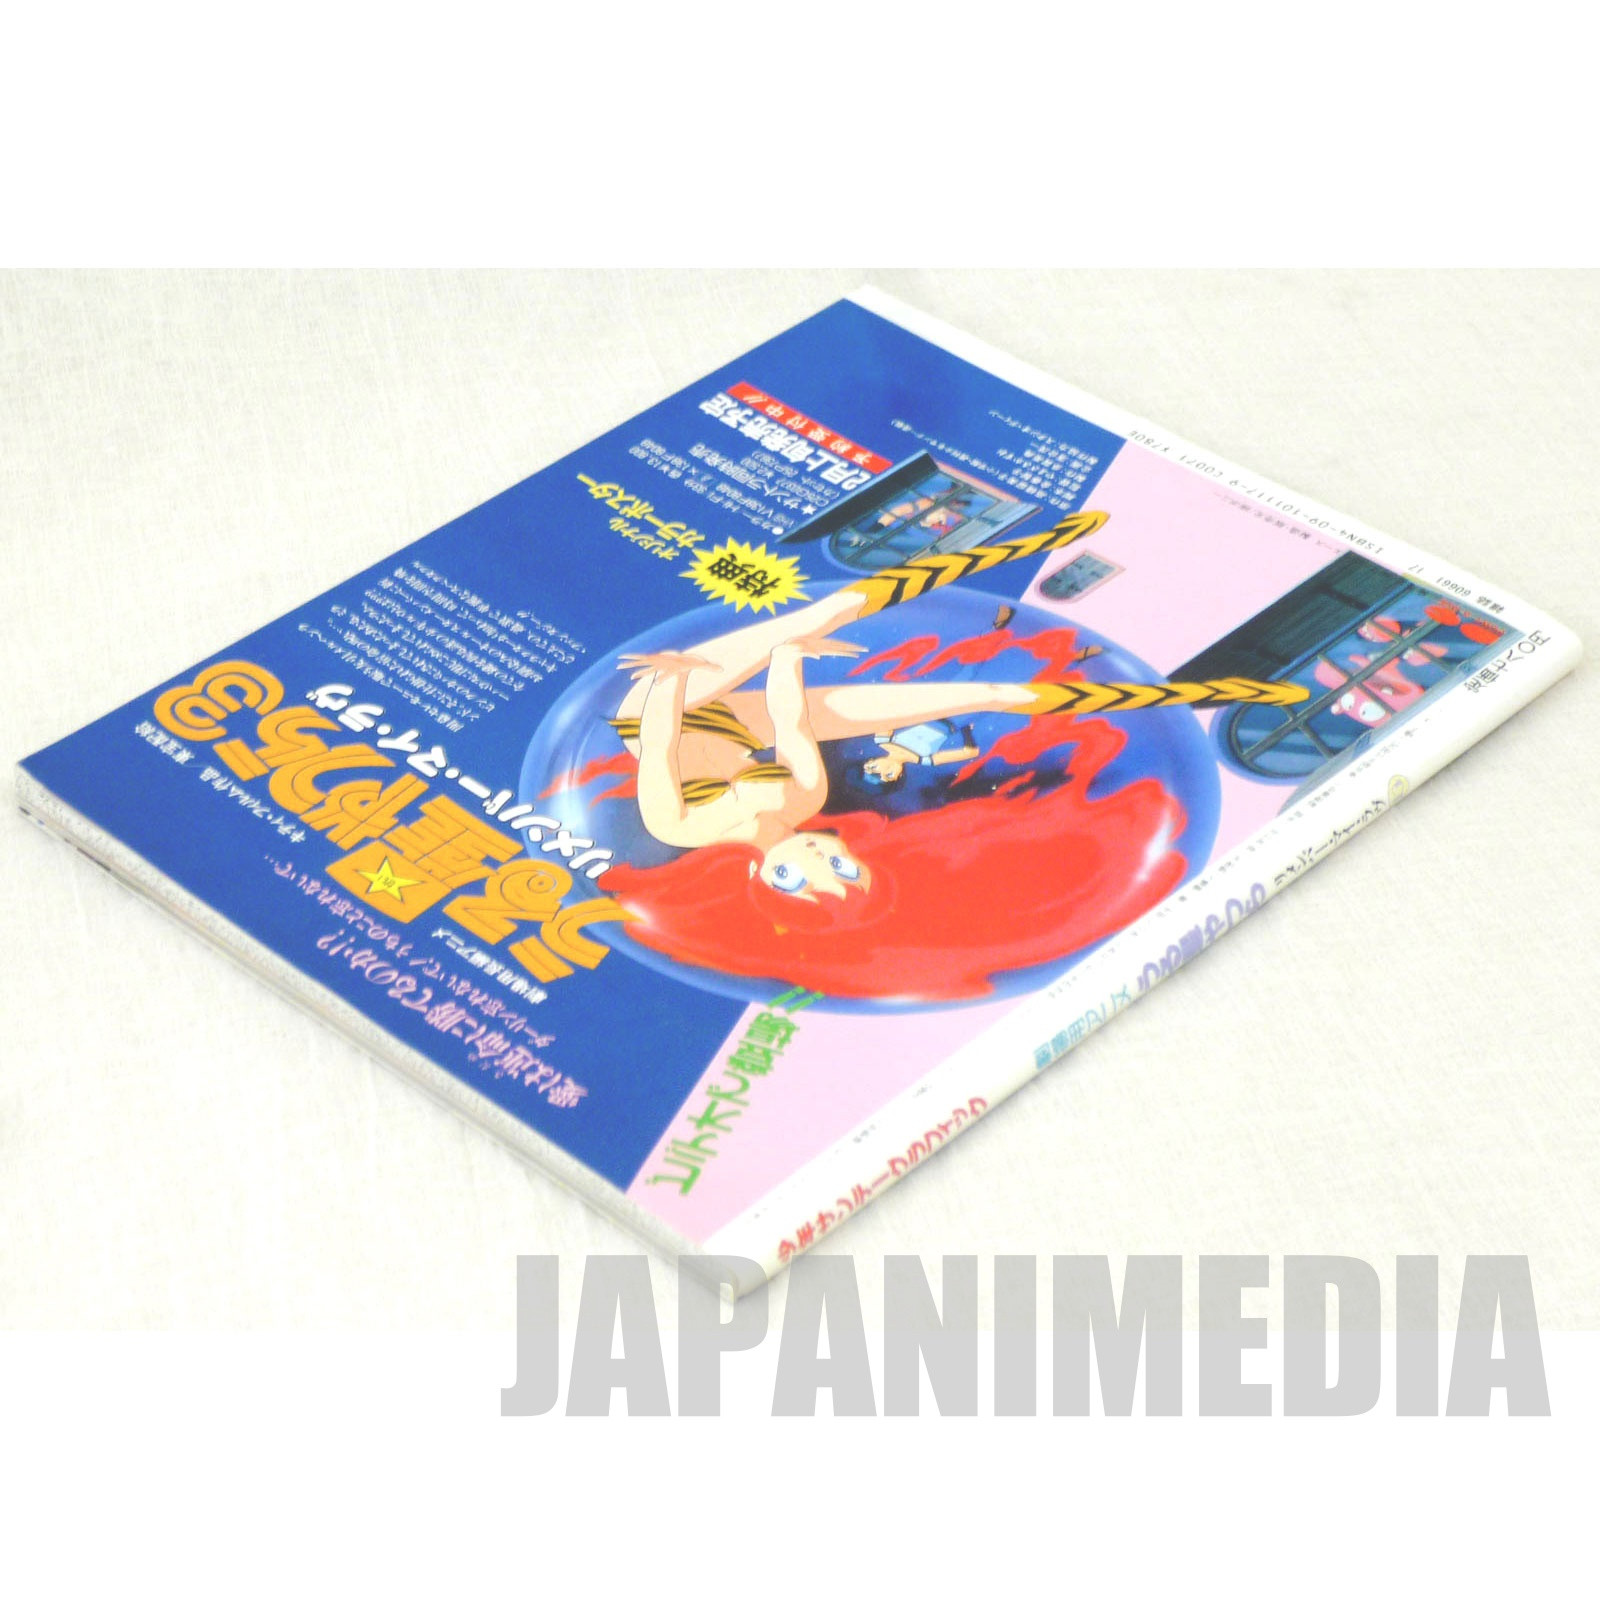 Urusei Yatsura film series Shonen Sunday Graphic Book 13 - Remember My Love - Poster JAPAN ANIME